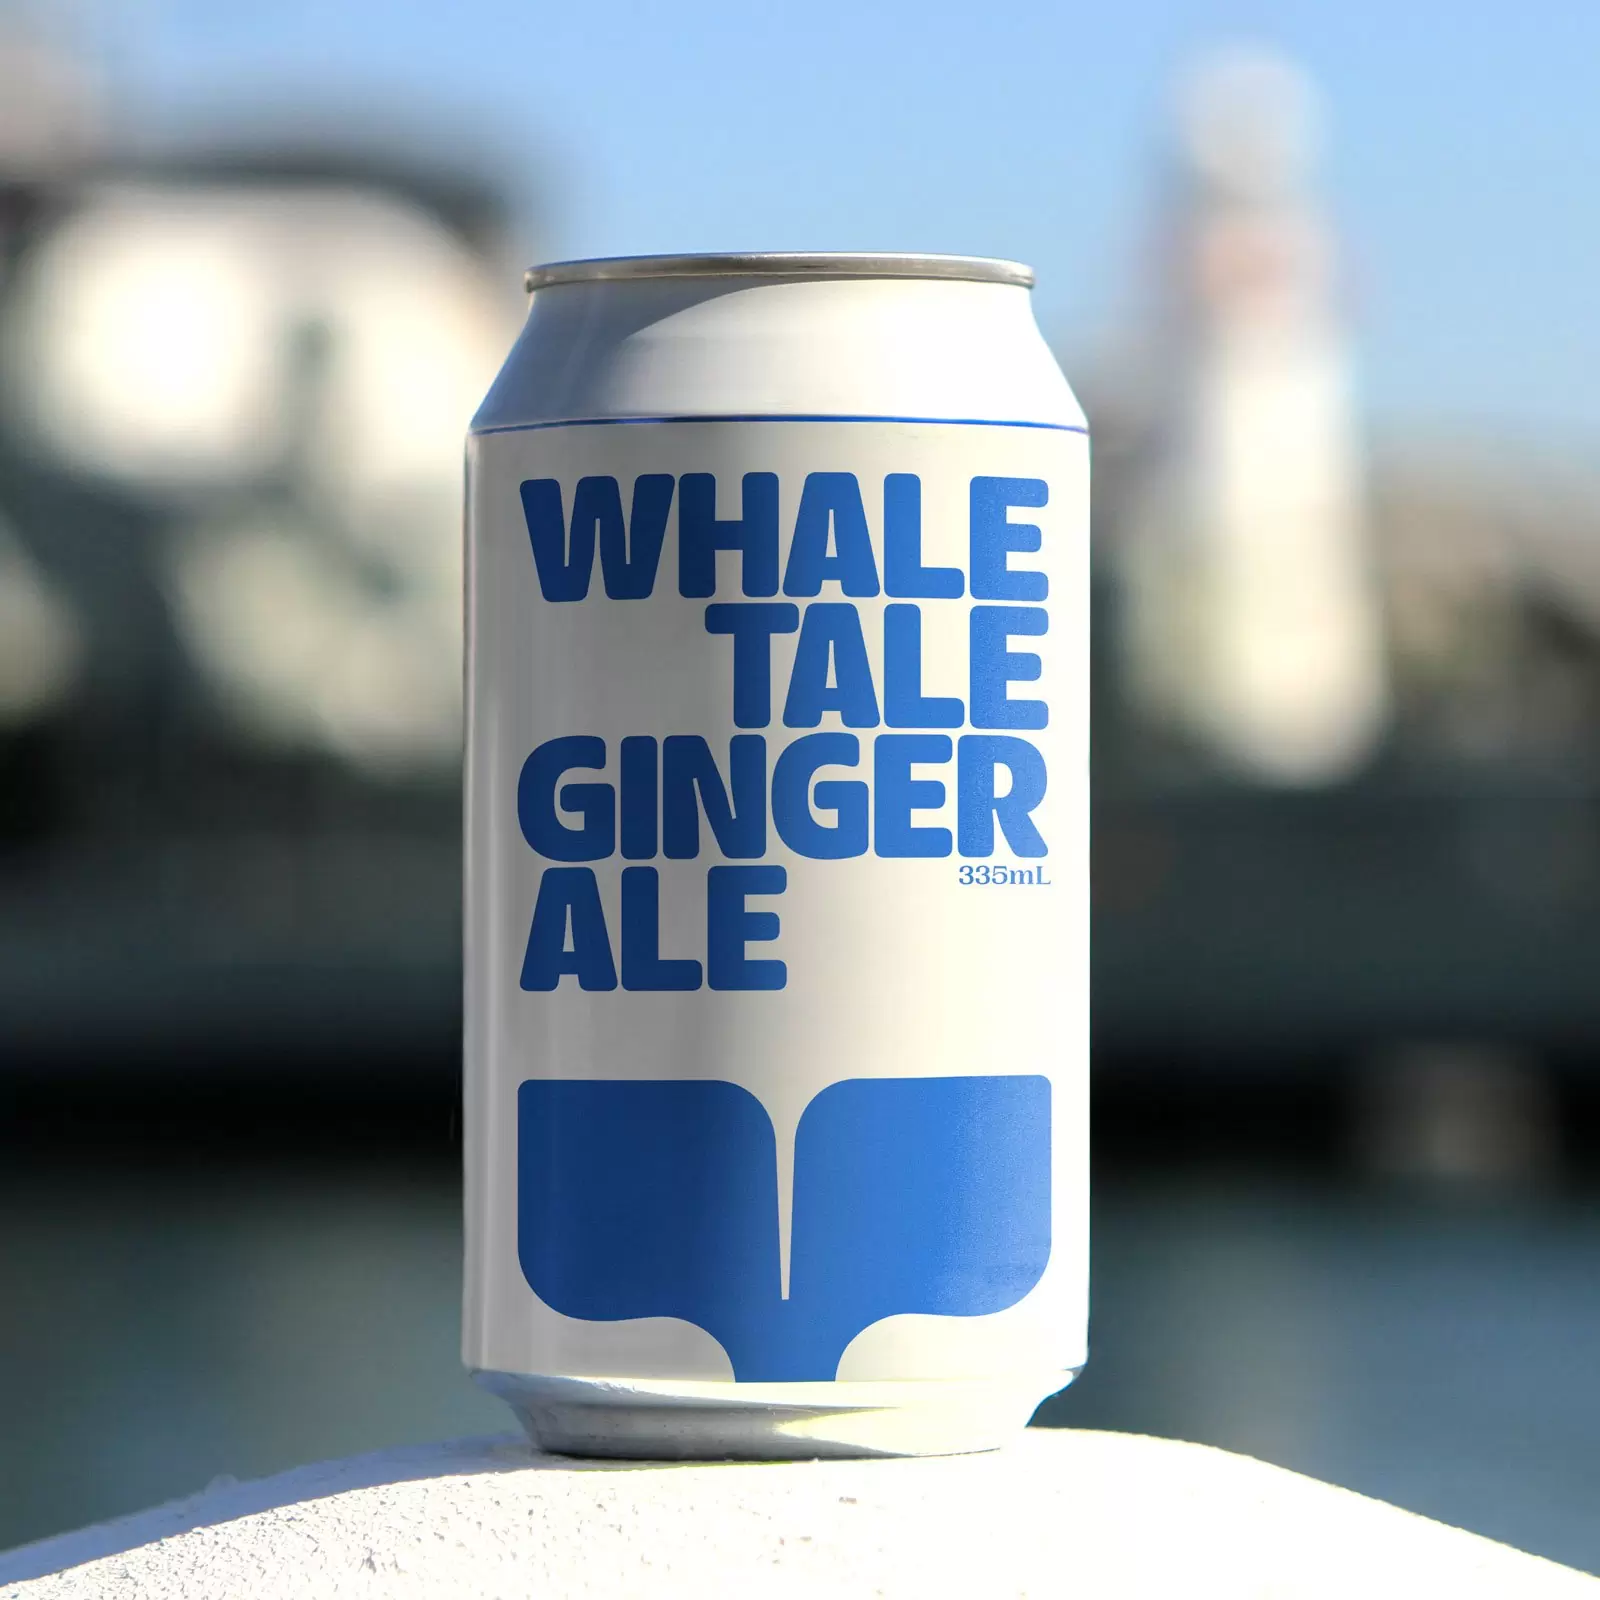 由 Interbrand Australia 設計的海濱藝術步行鯨魚故事的標志和視覺識別設計。